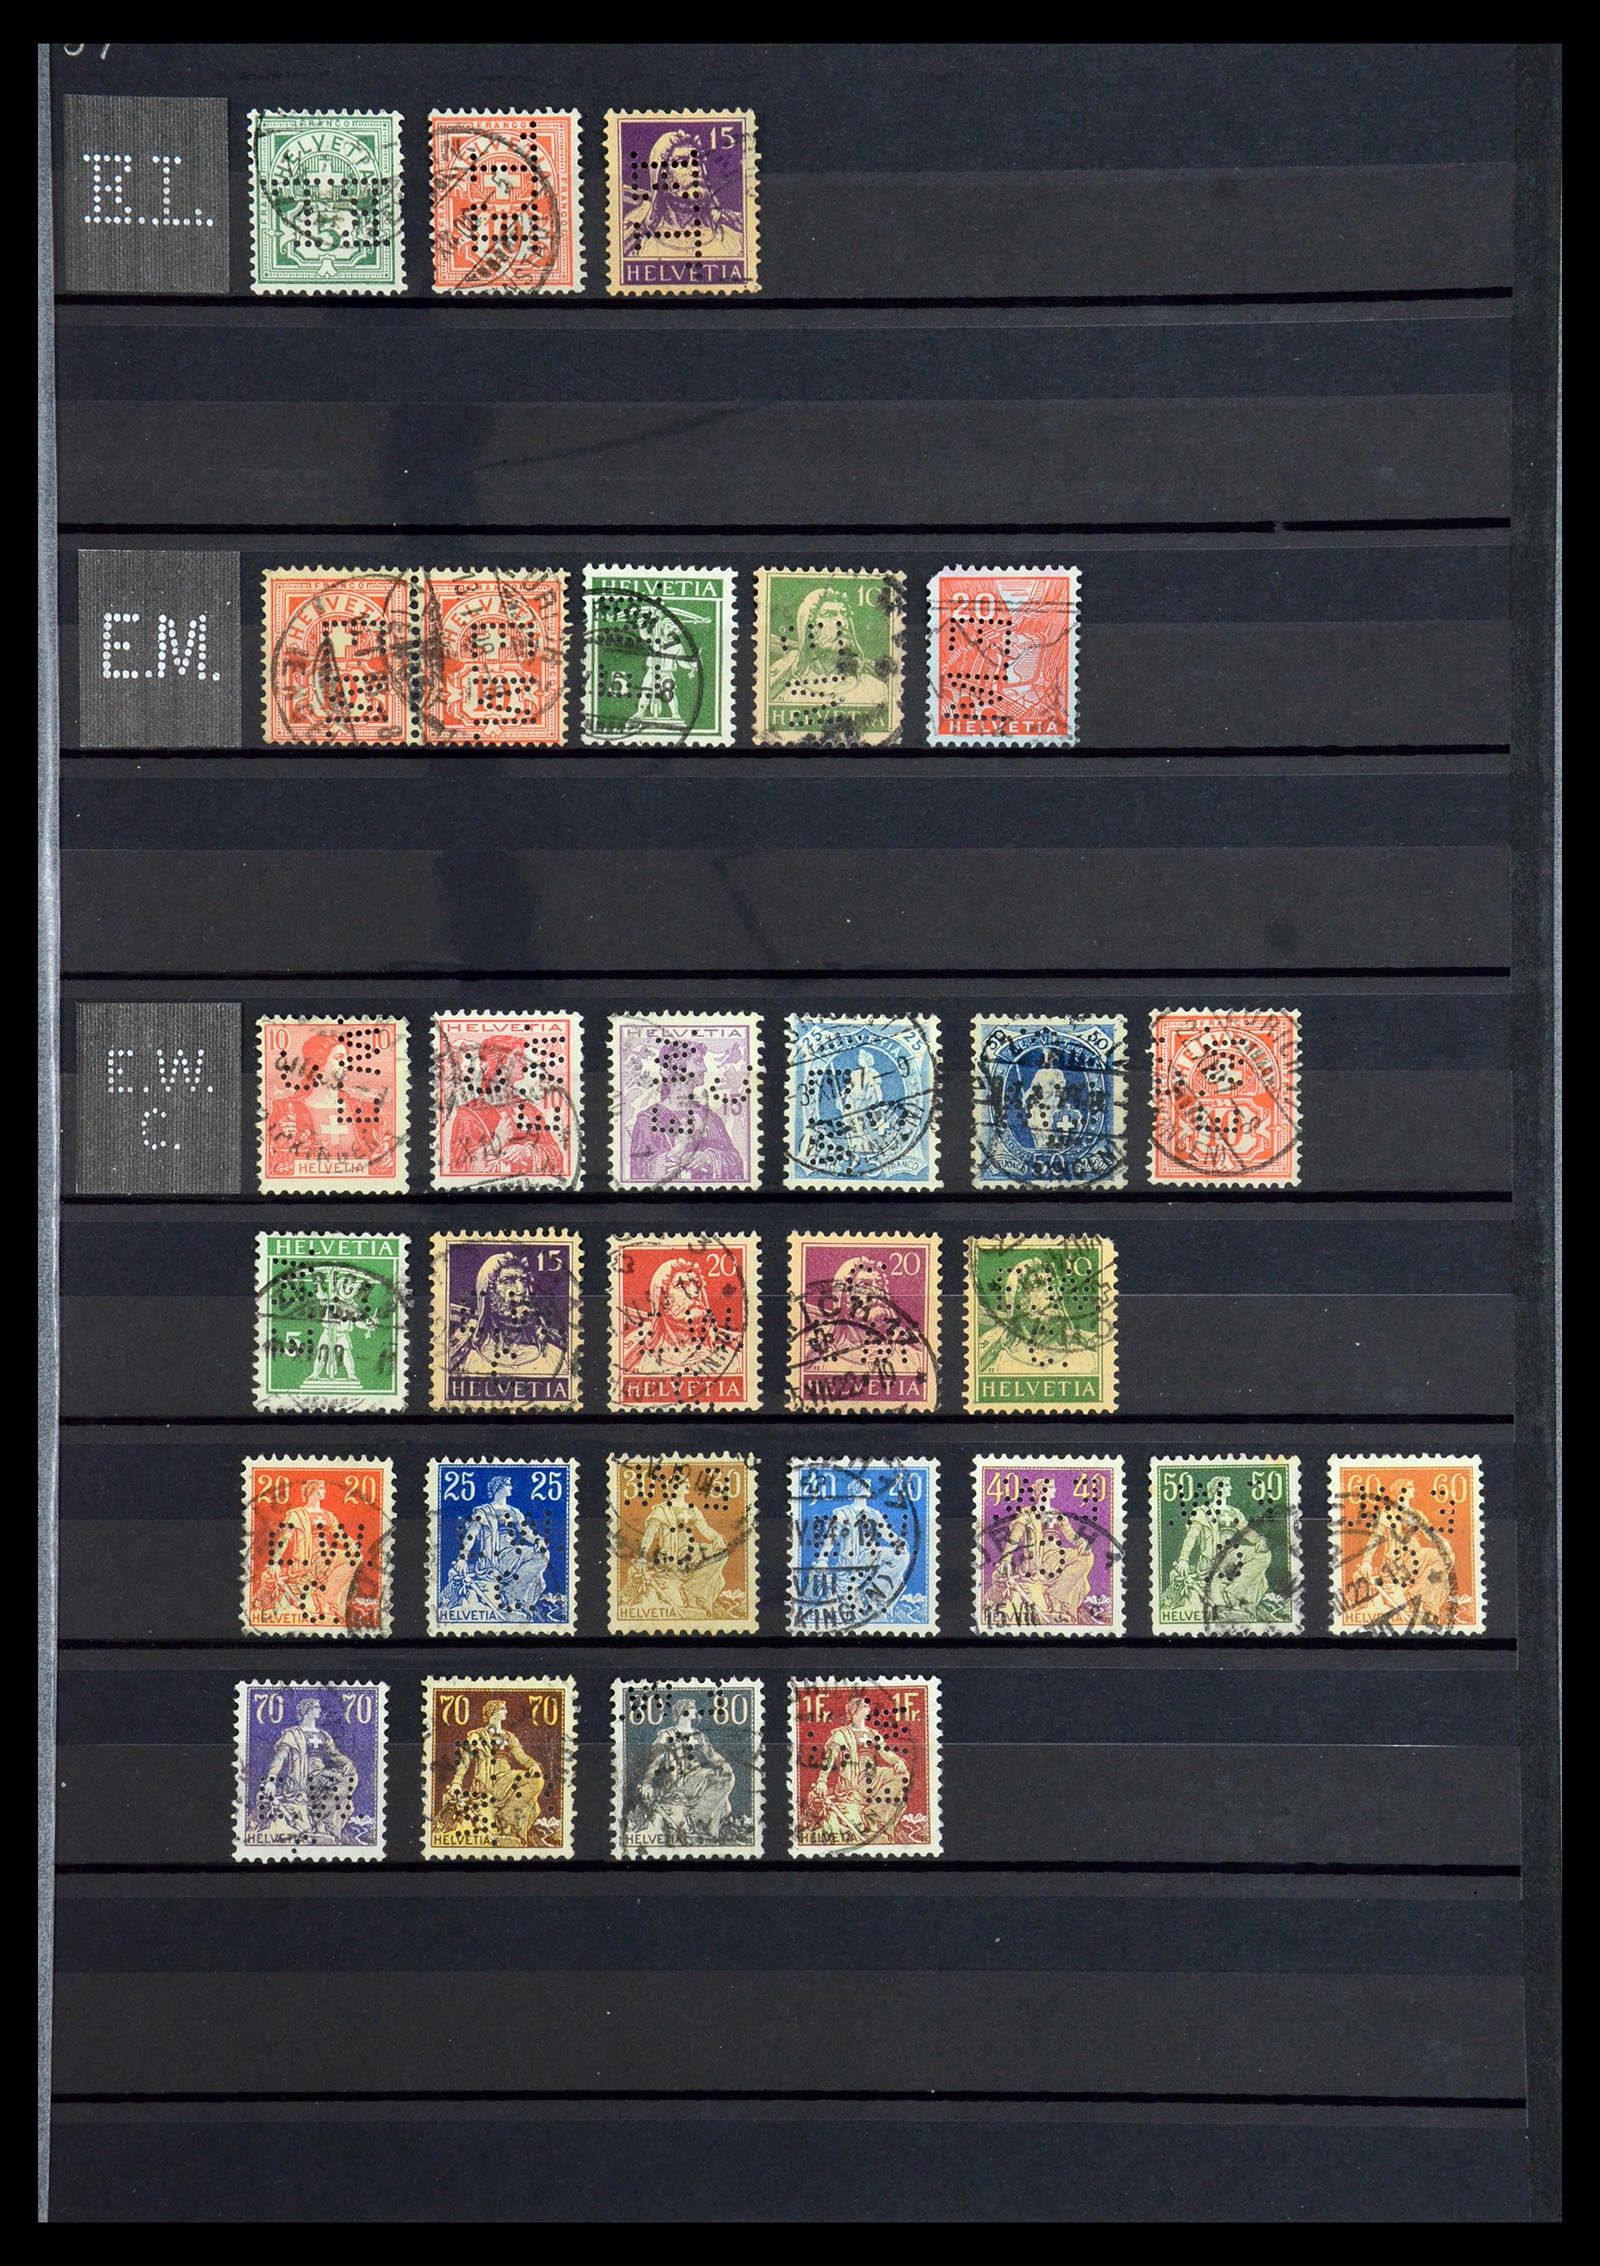 36372 017 - Stamp collection 36372 Switzerland perfins 1880-1960.